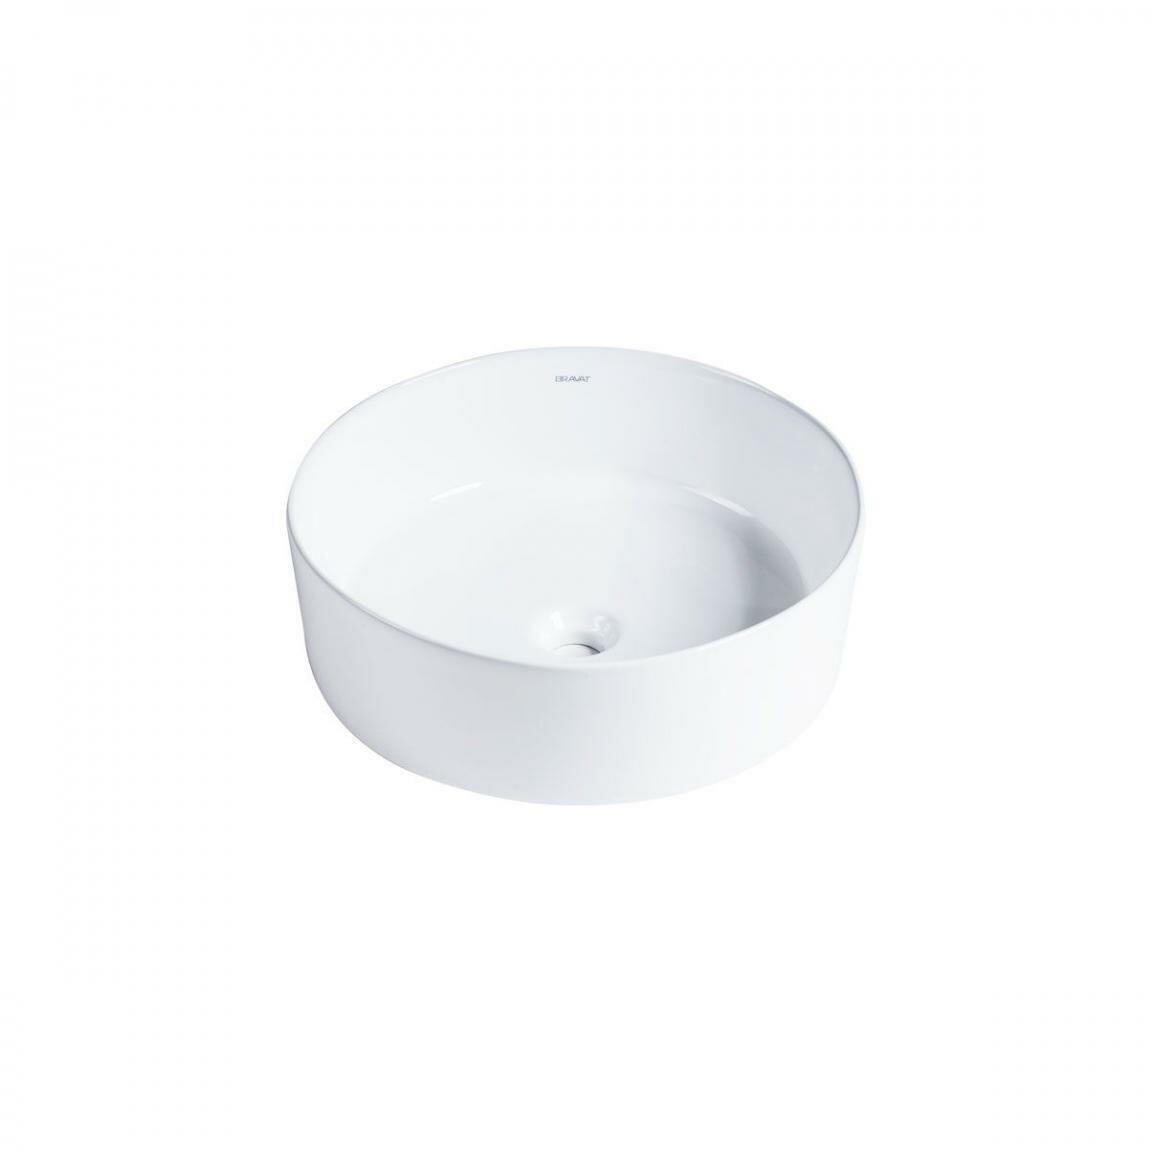 BRAVAT Affability C22284W-ENG Раковина накладная, цвет белый, форма: круглая, размеры: 420х395х146мм